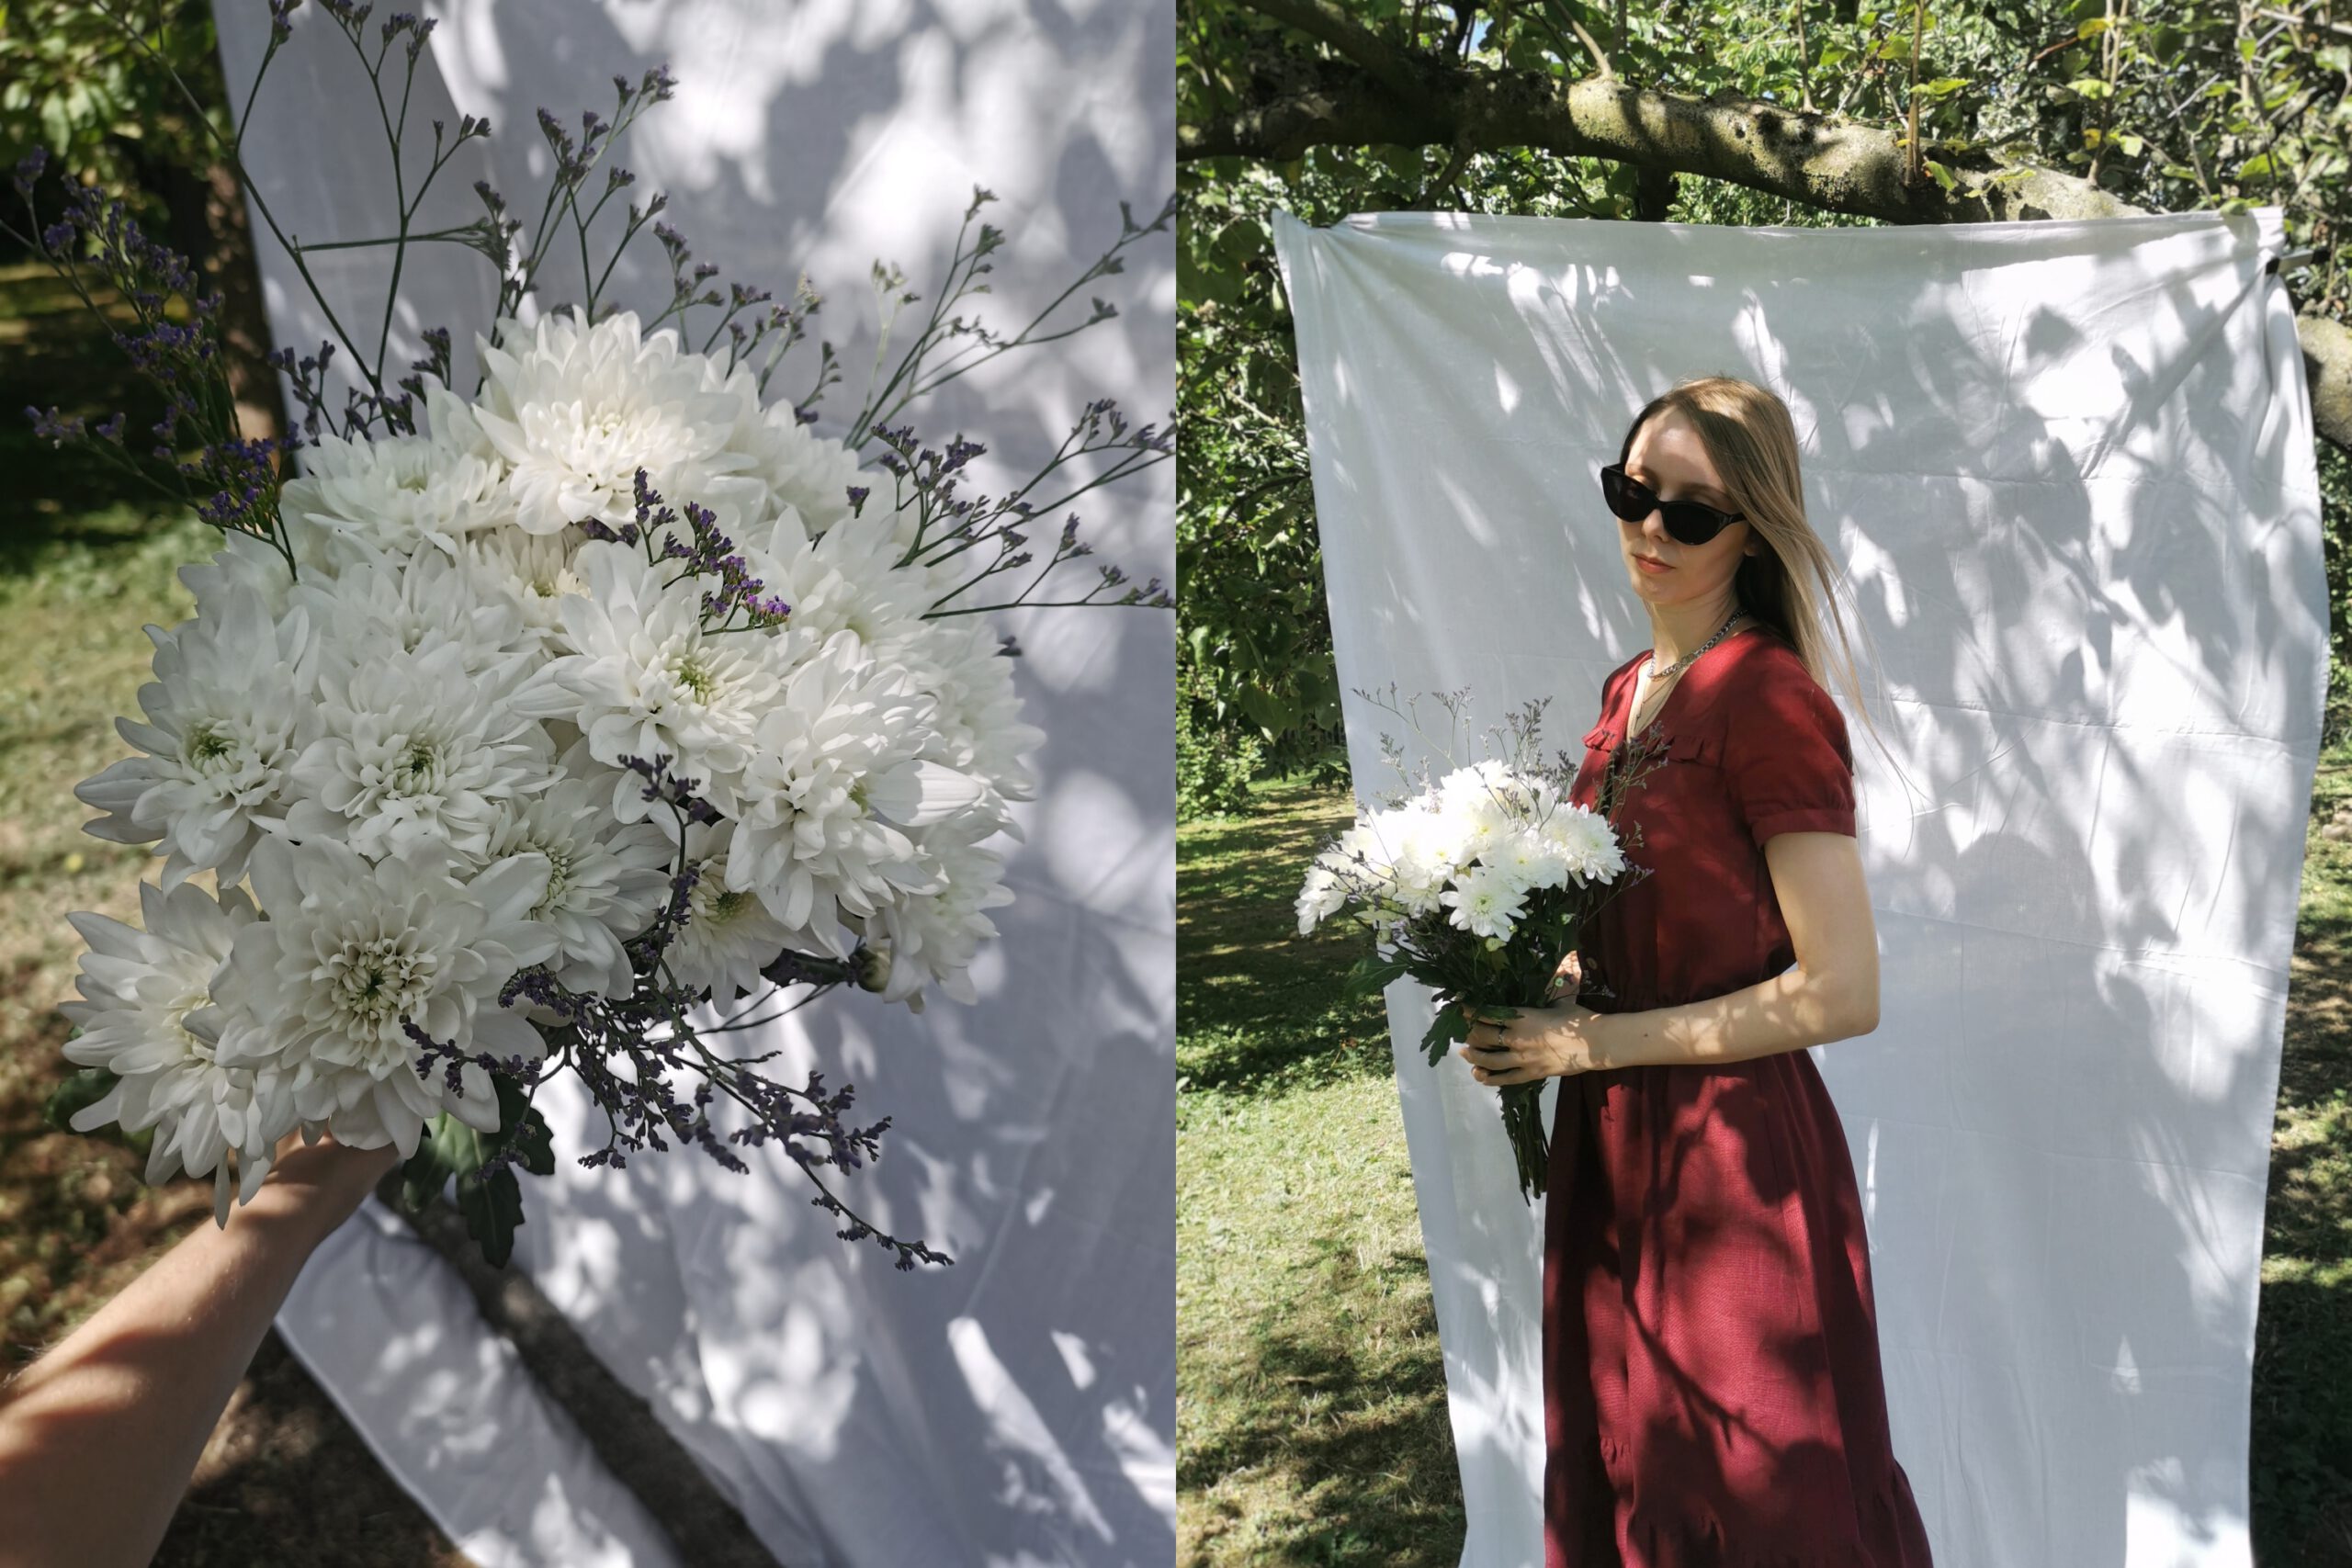 Linnen jurk wijnrood op maak gemaakt door Naaiatelier Marta in Breda cottagecore fotoshoot met wit doek in natuur met romantische sfeer en witte bloemen